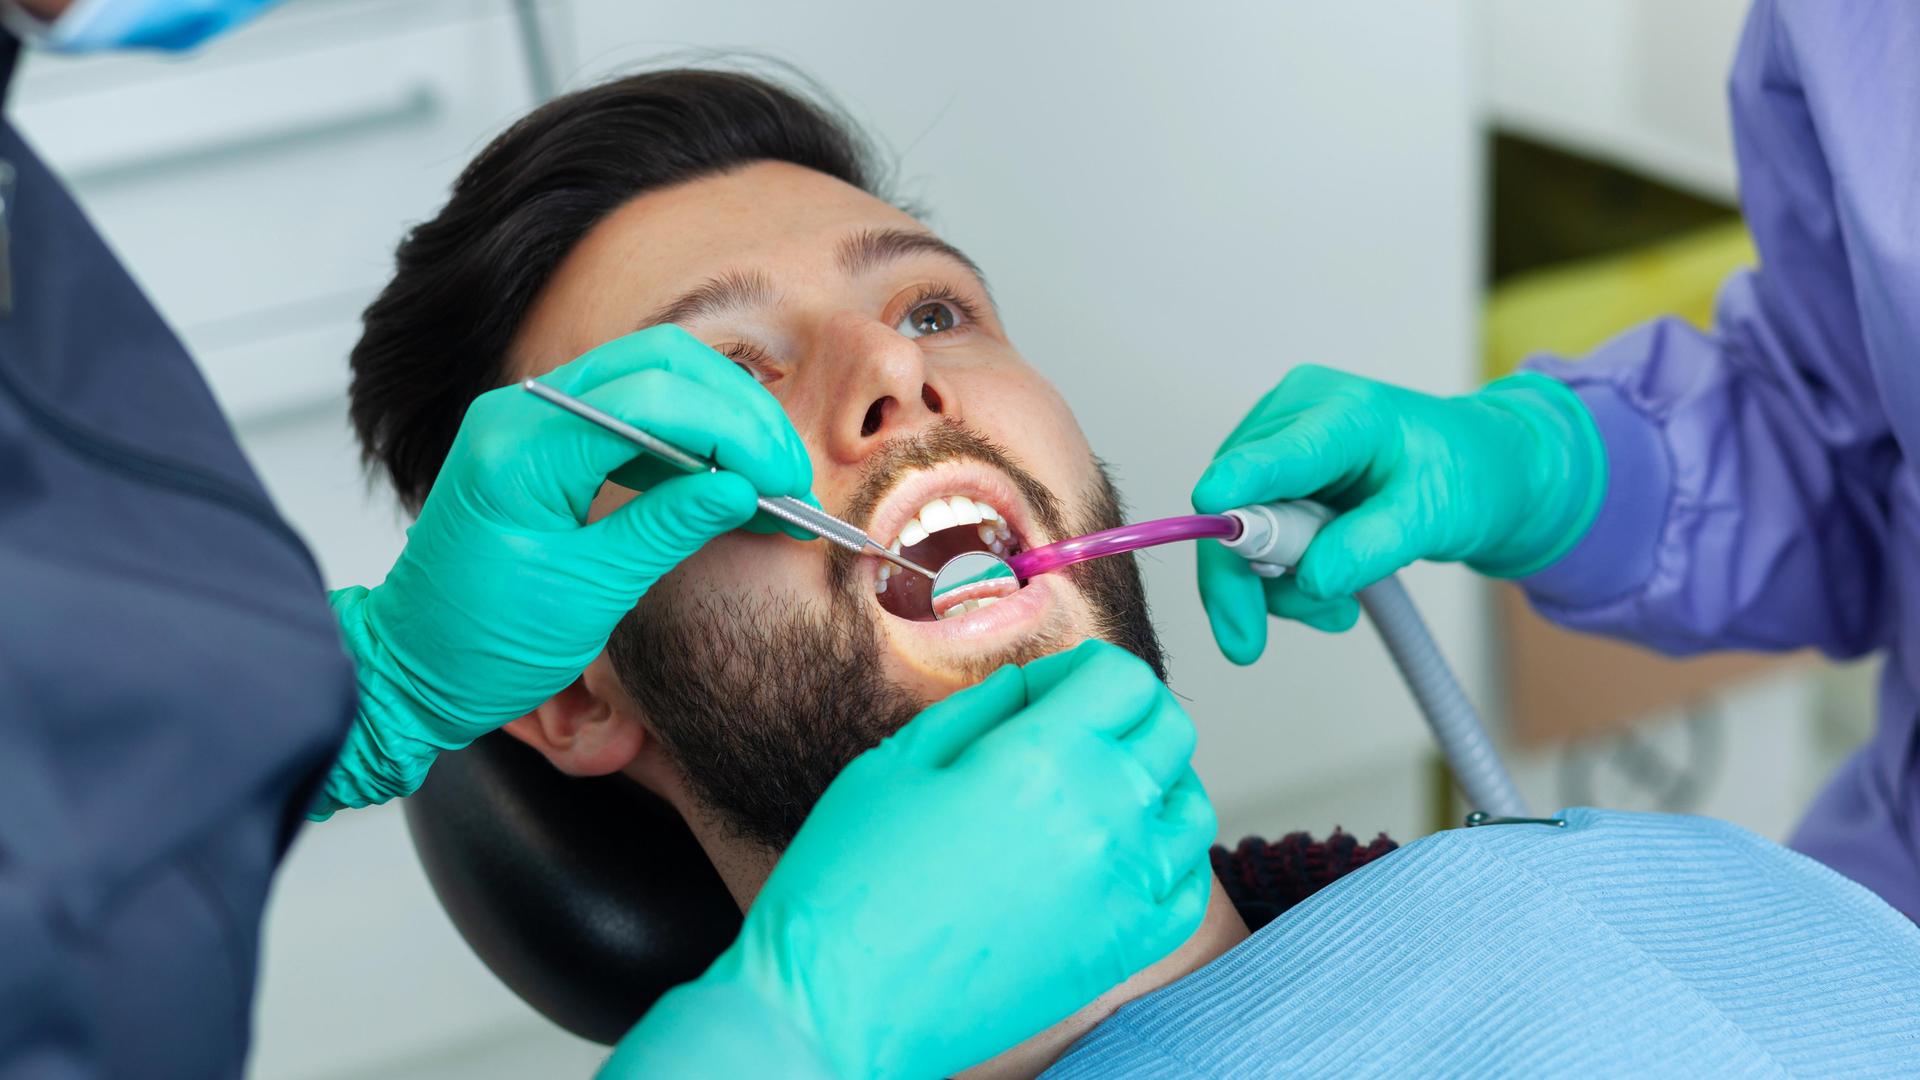 Eine Zahnärztin untersucht einen männlichen Patienten in einer Zahnarztpraxis mit professionellem Werkzeug und persönlicher Schutzausrüstung.